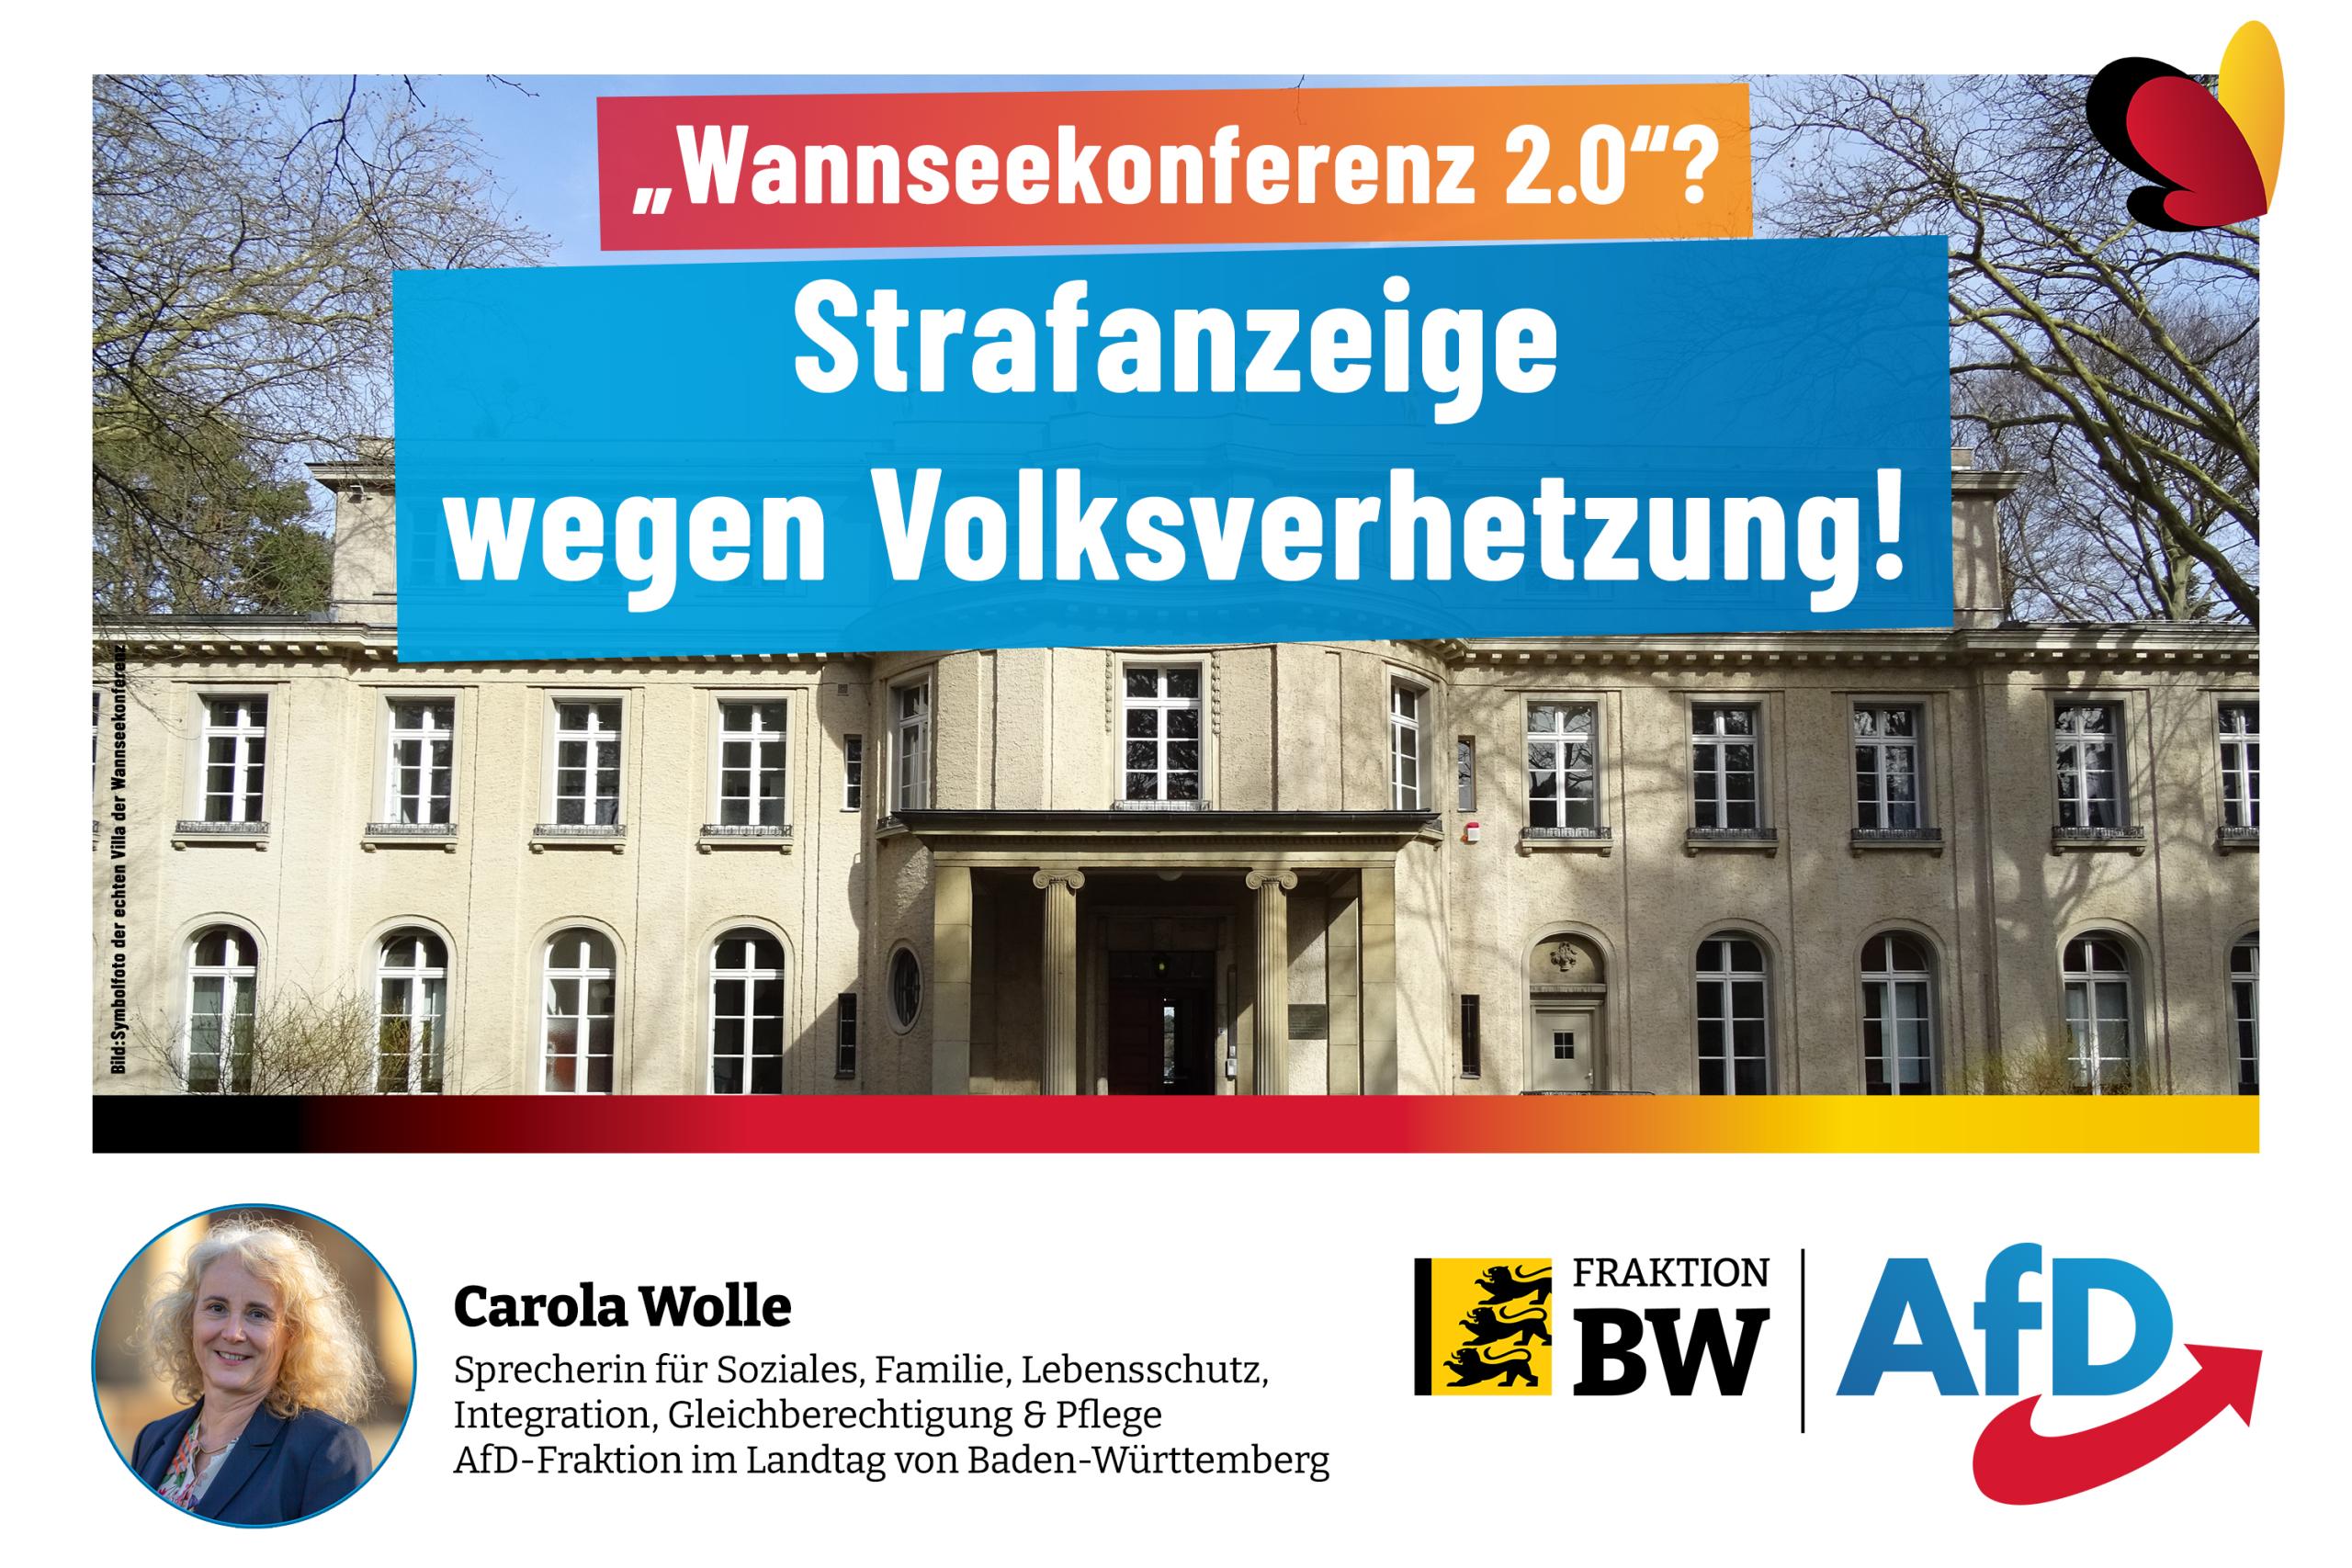 Carola Wolle: „Wannseekonferenz 2.0“? Strafanzeige wegen Volksverhetzung!